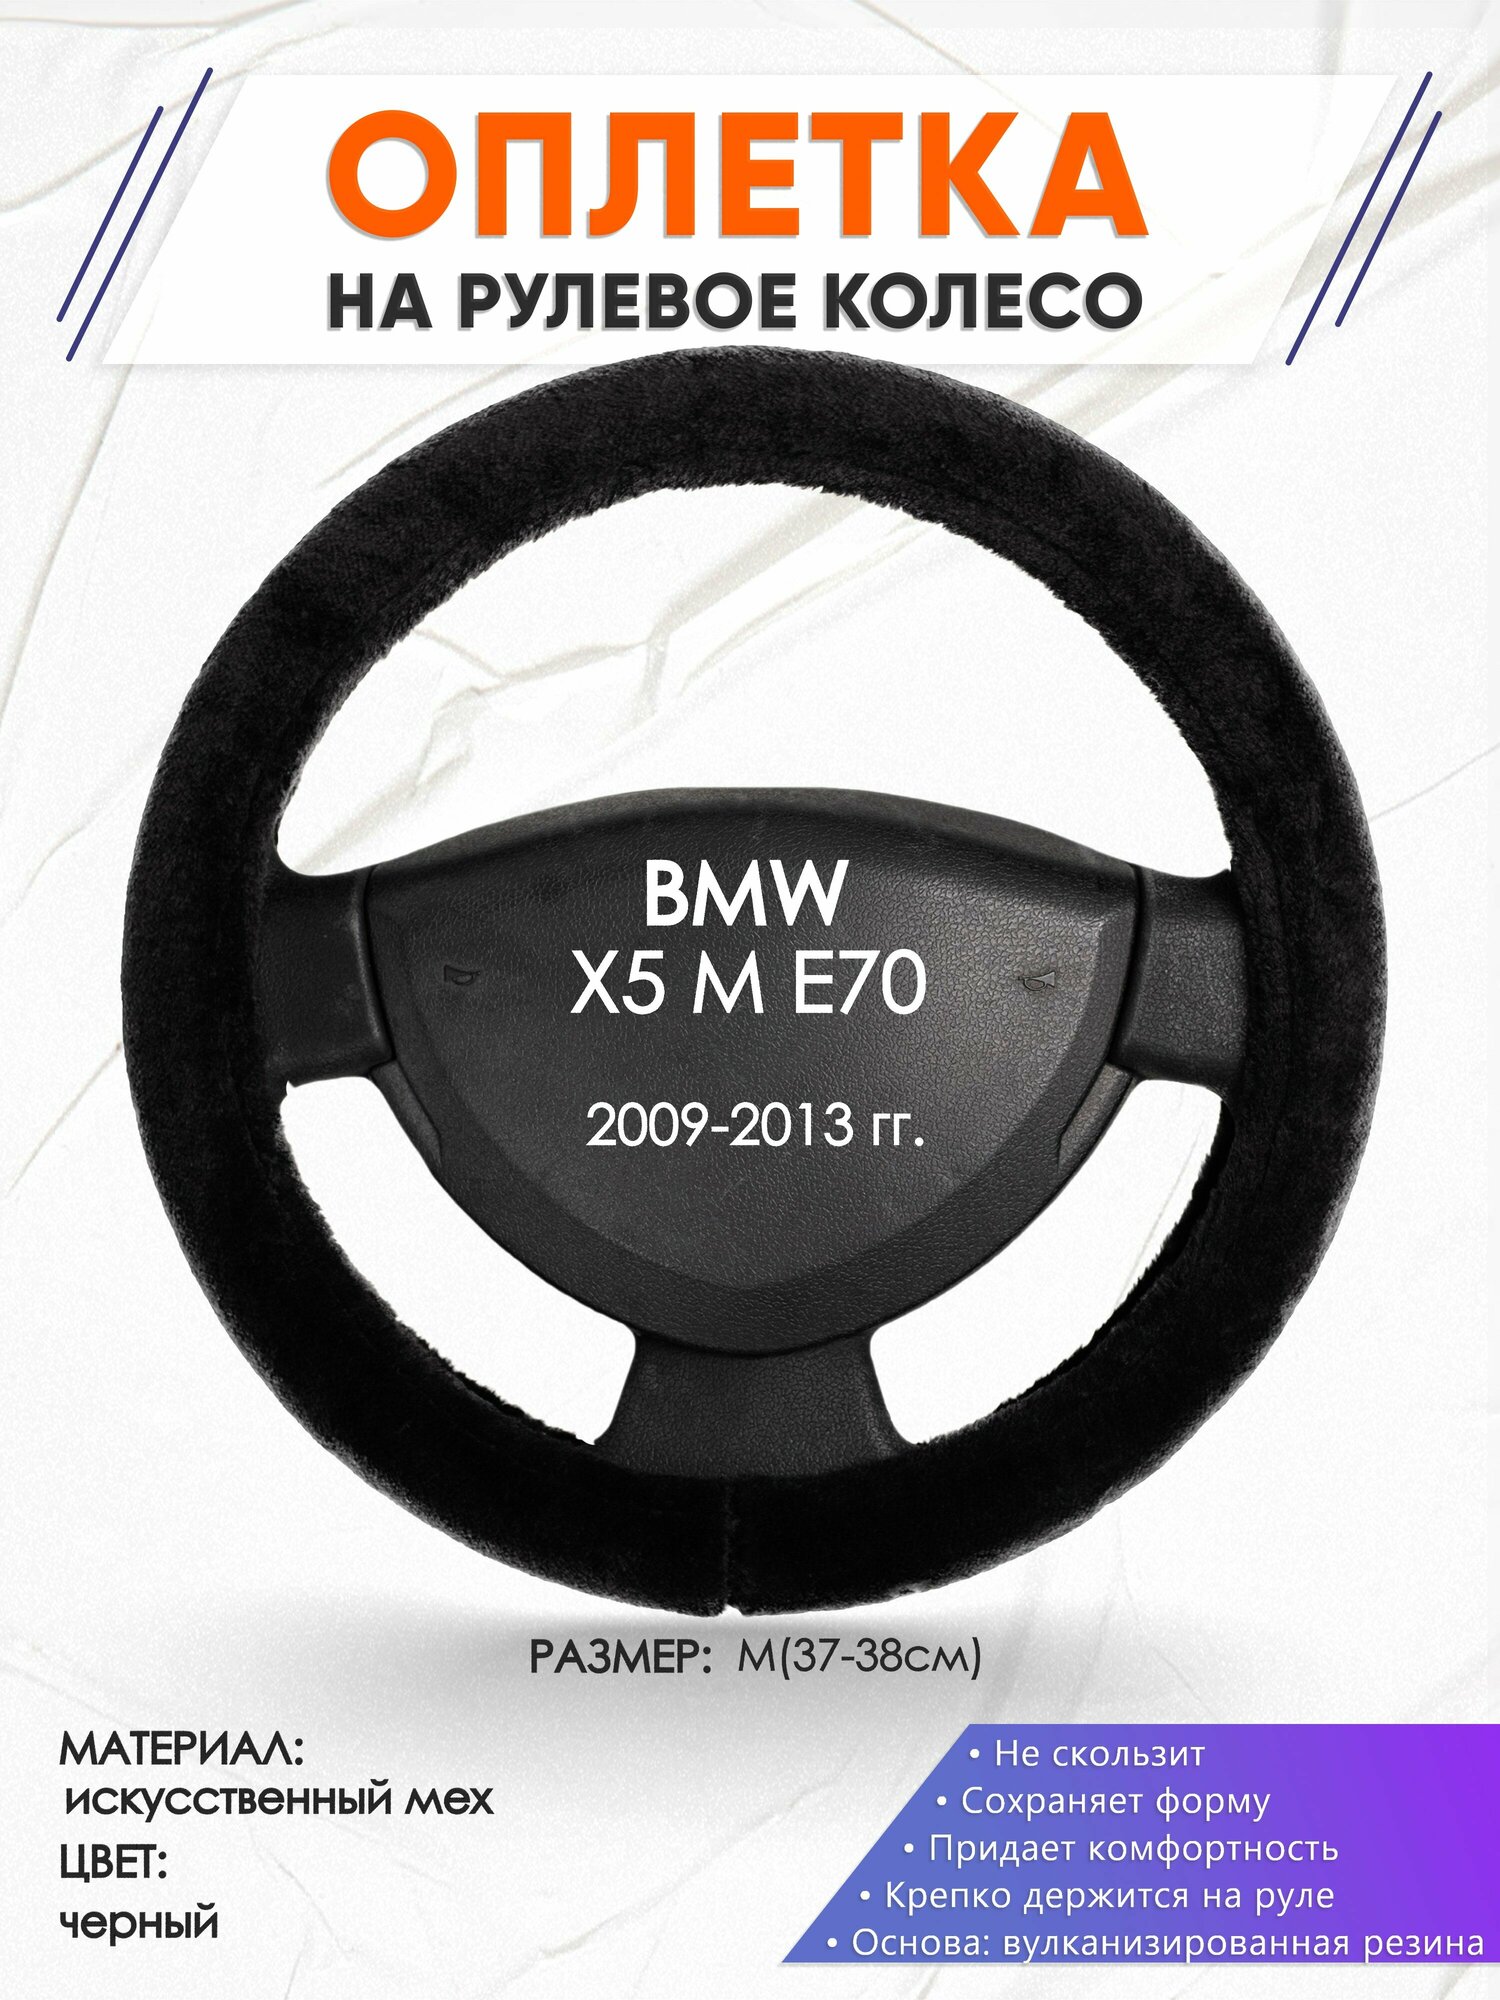 Оплетка наруль для BMW X5 M E70(Бмв икс5) 2009-2013 годов выпуска, размер M(37-38см), Искусственный мех 45